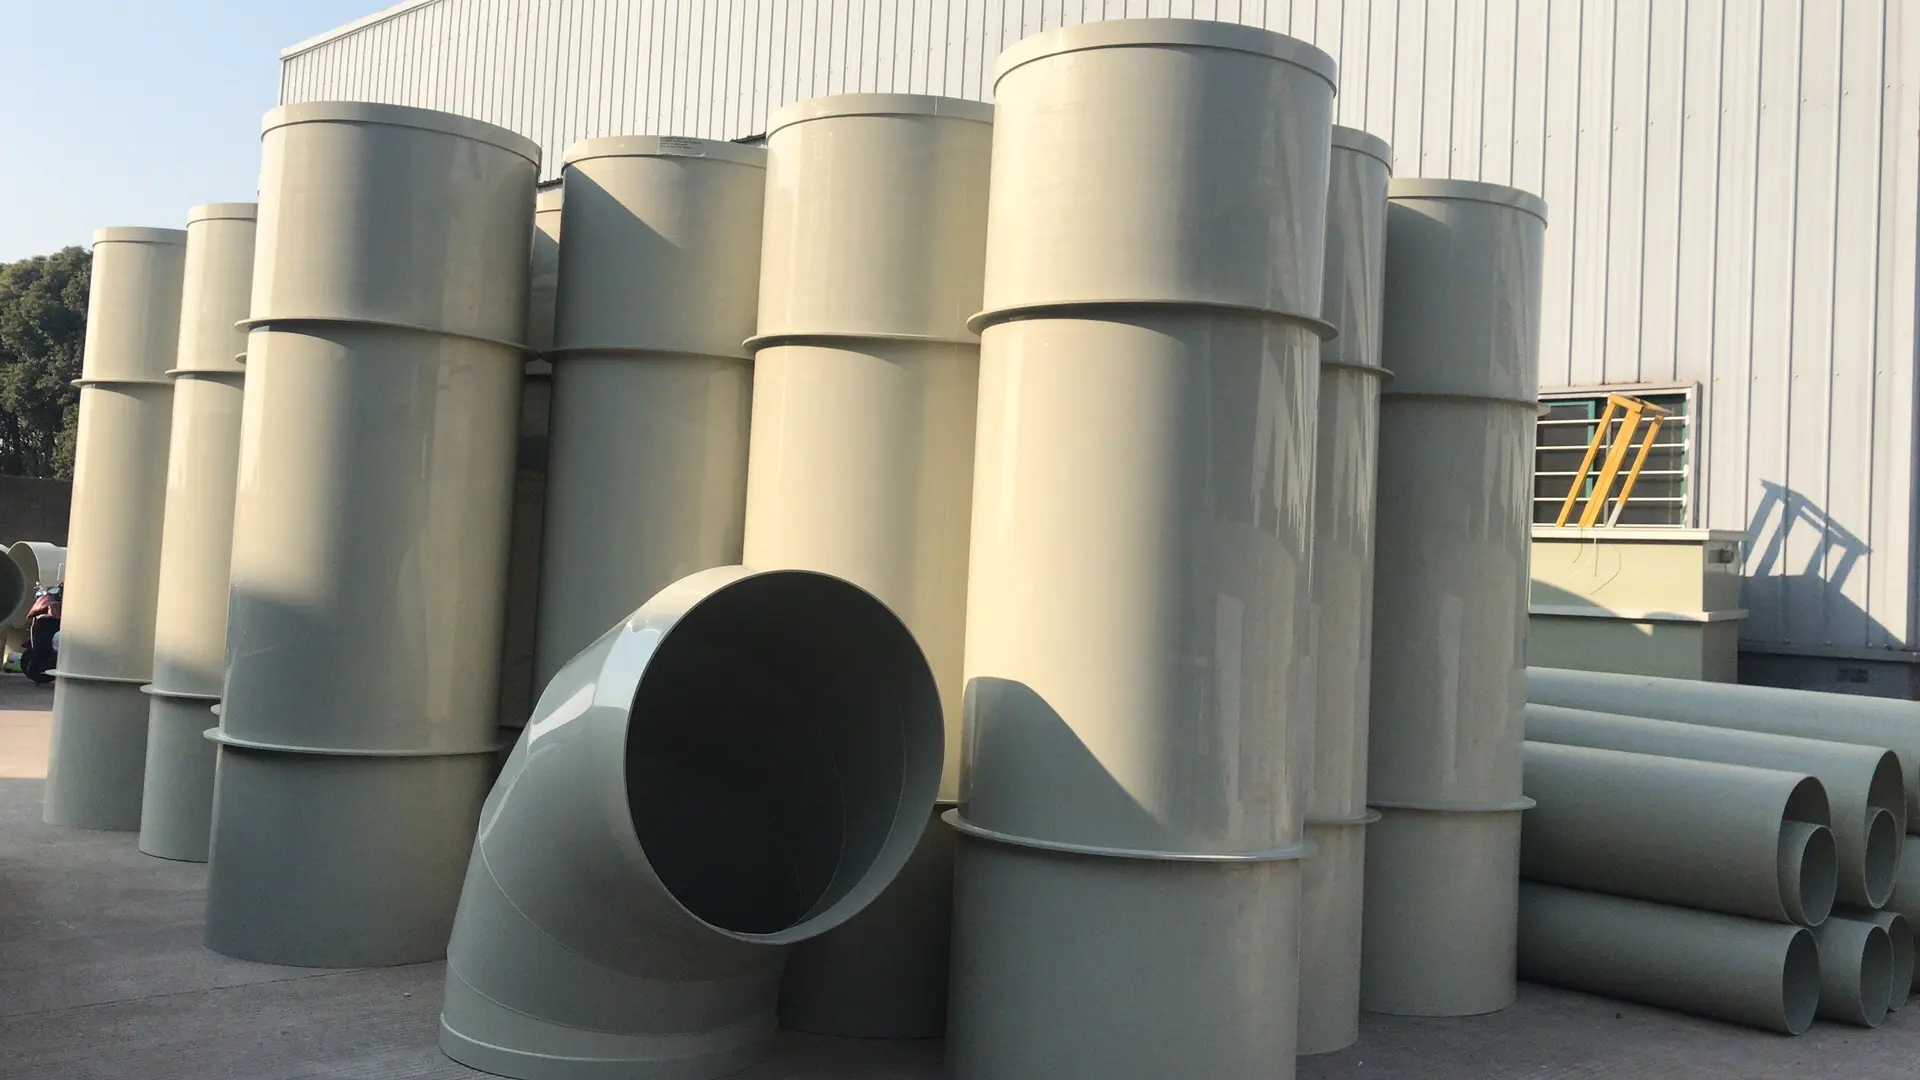 pp风管作为一种绿色环保型管材用于不同行业